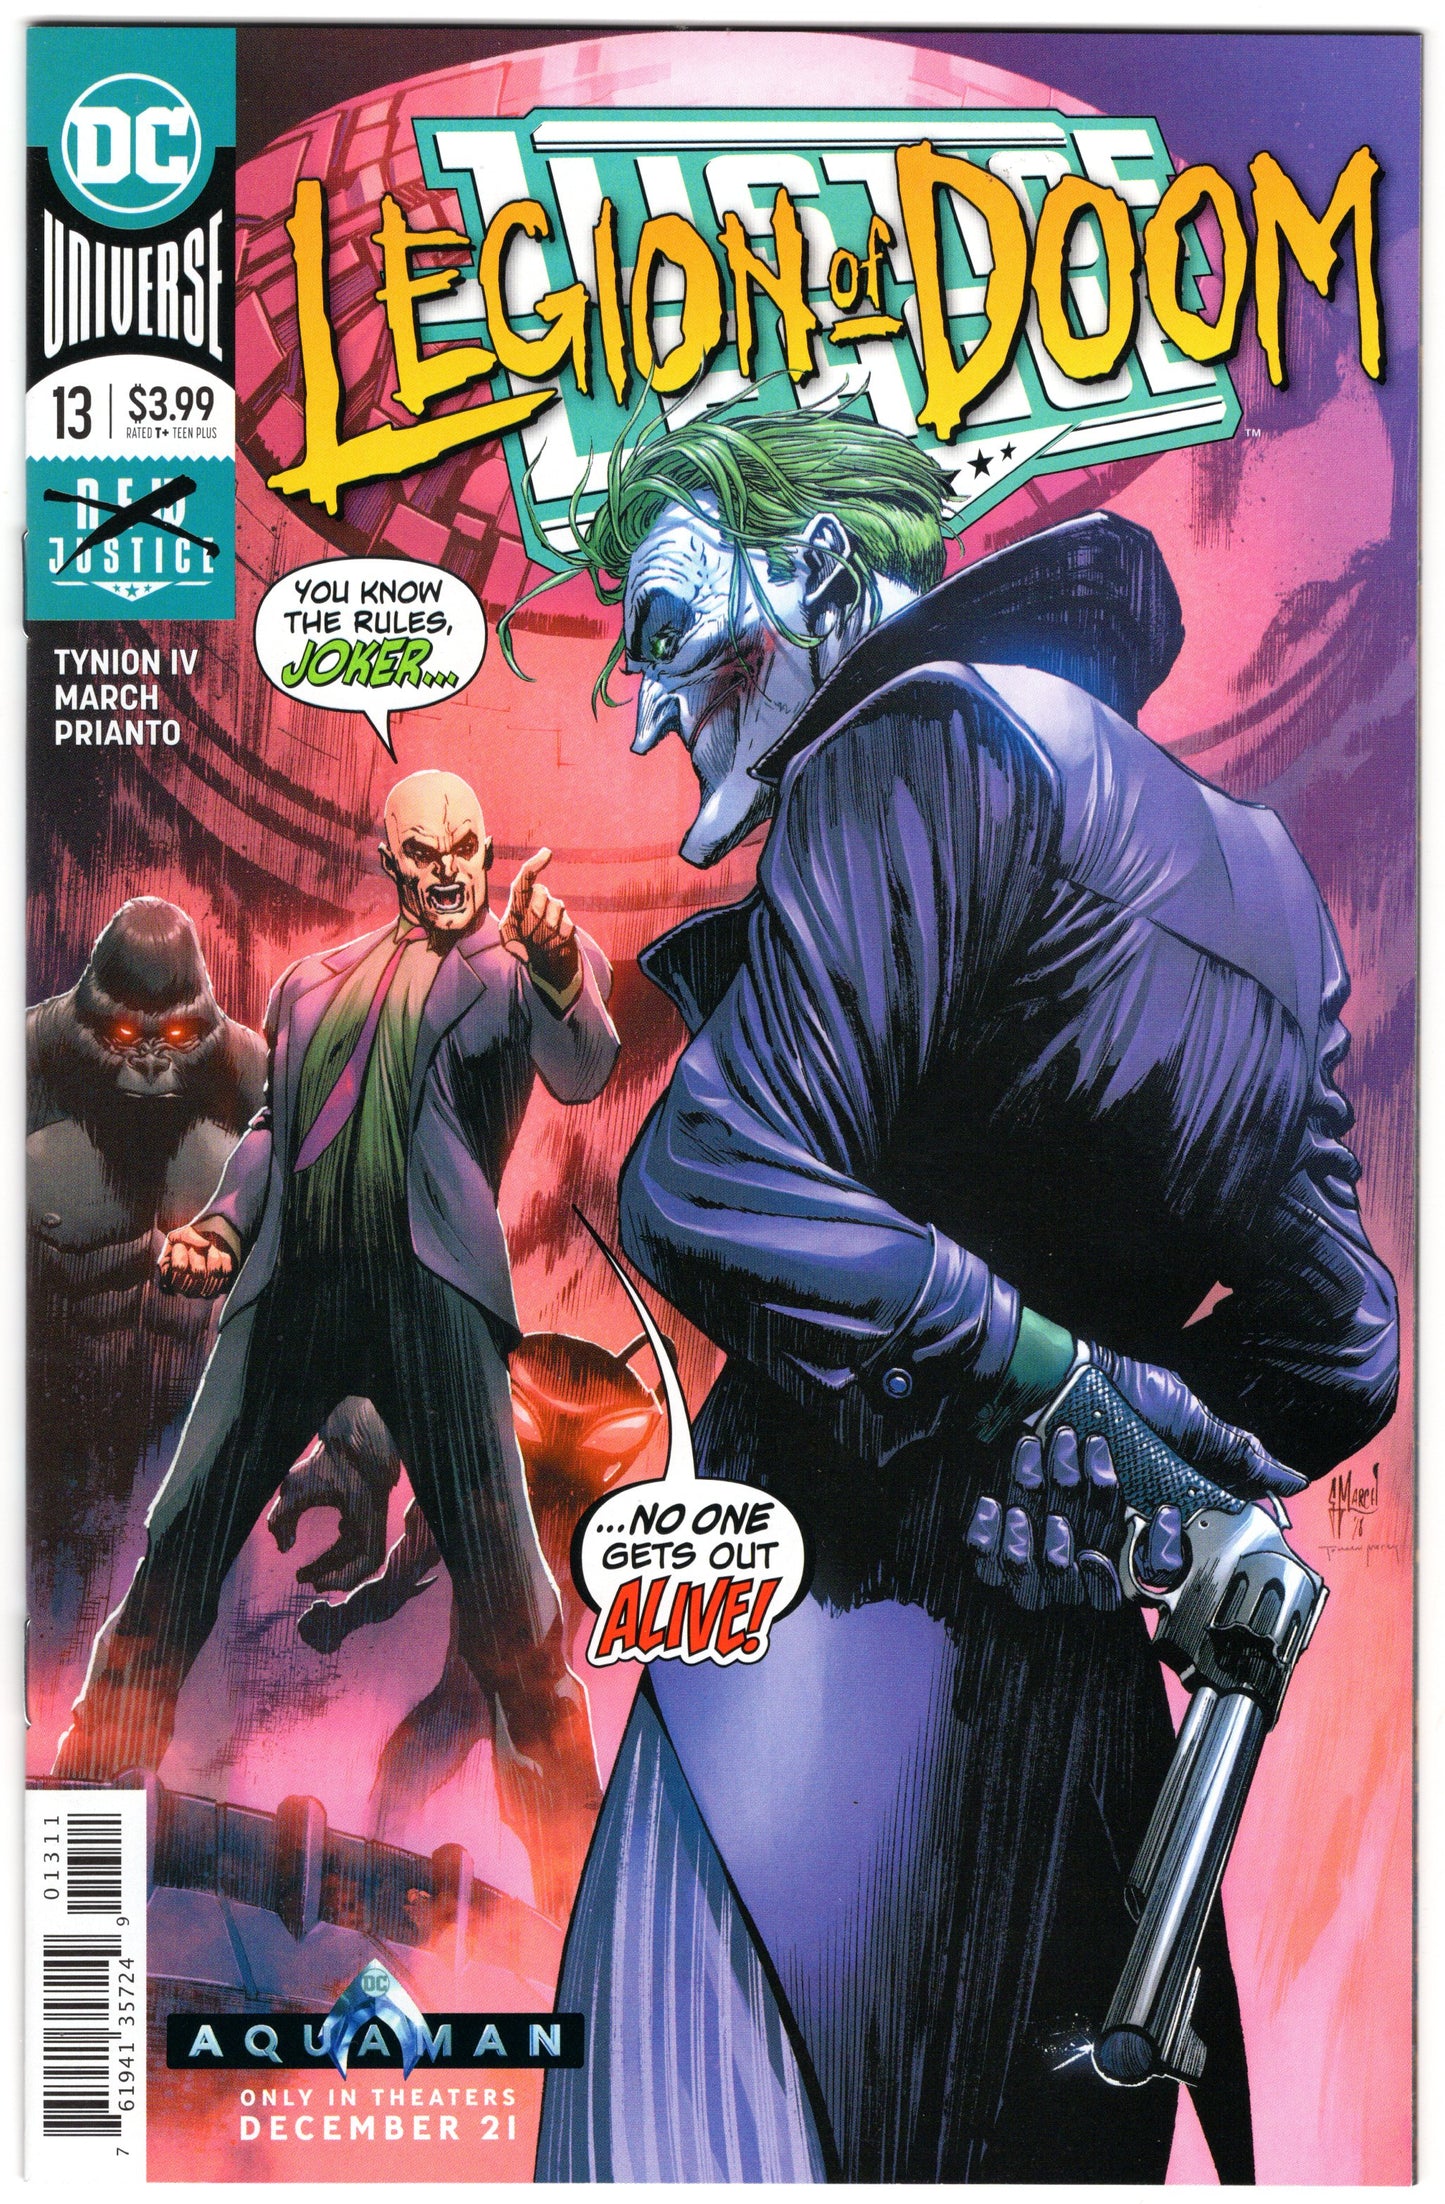 Justice League - Issue #13 "Legion of Doom" (Feb. 2019 - DC Comics) NM+